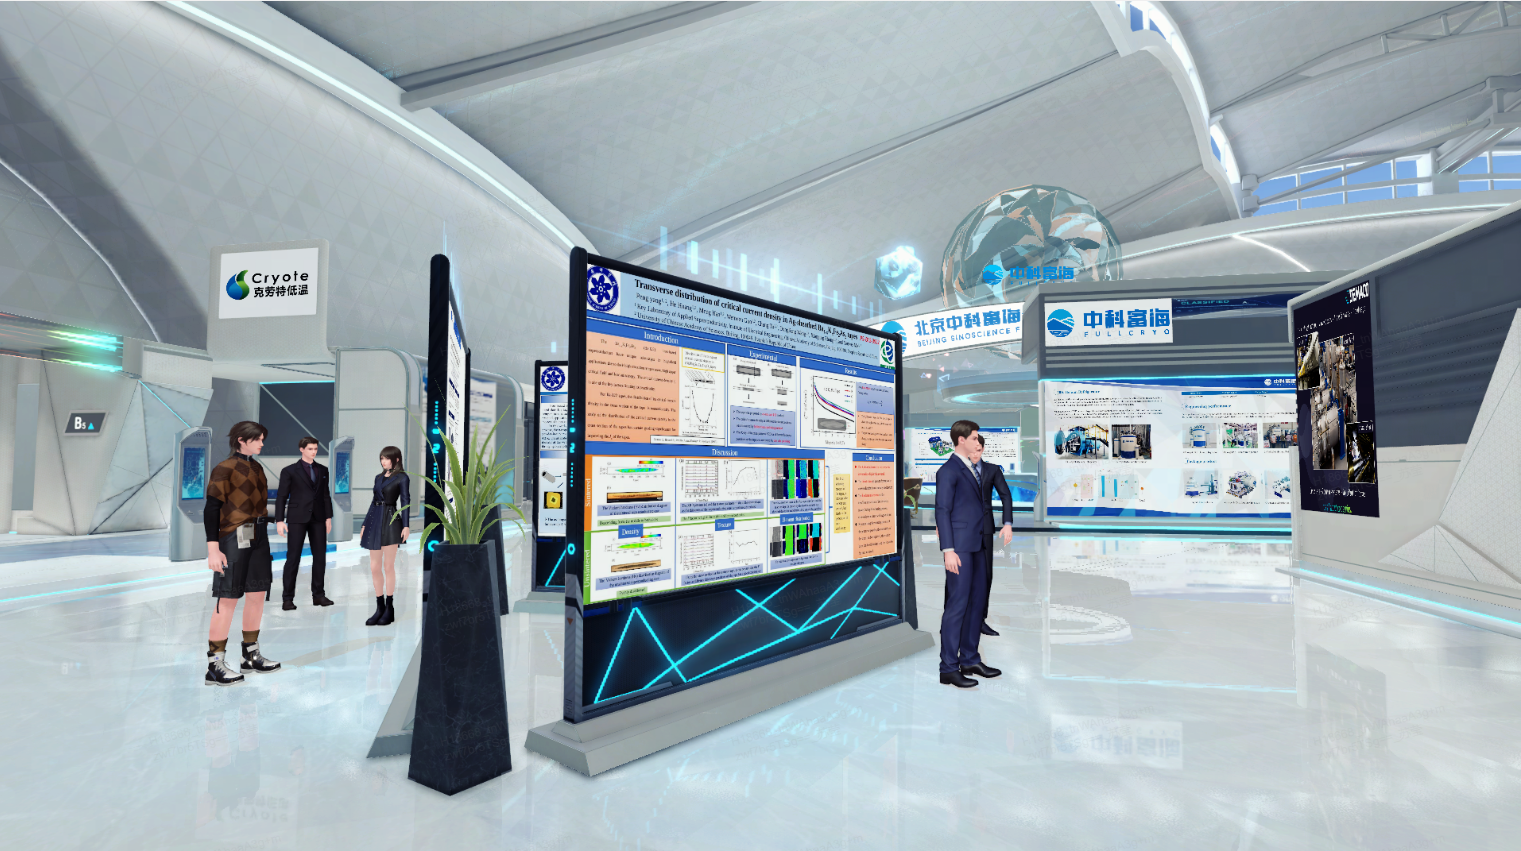 图片展示了一个现代化的室内科技展览空间，几位参观者正在观看展板，环境设计现代且科技感强烈，有未来主义风格。